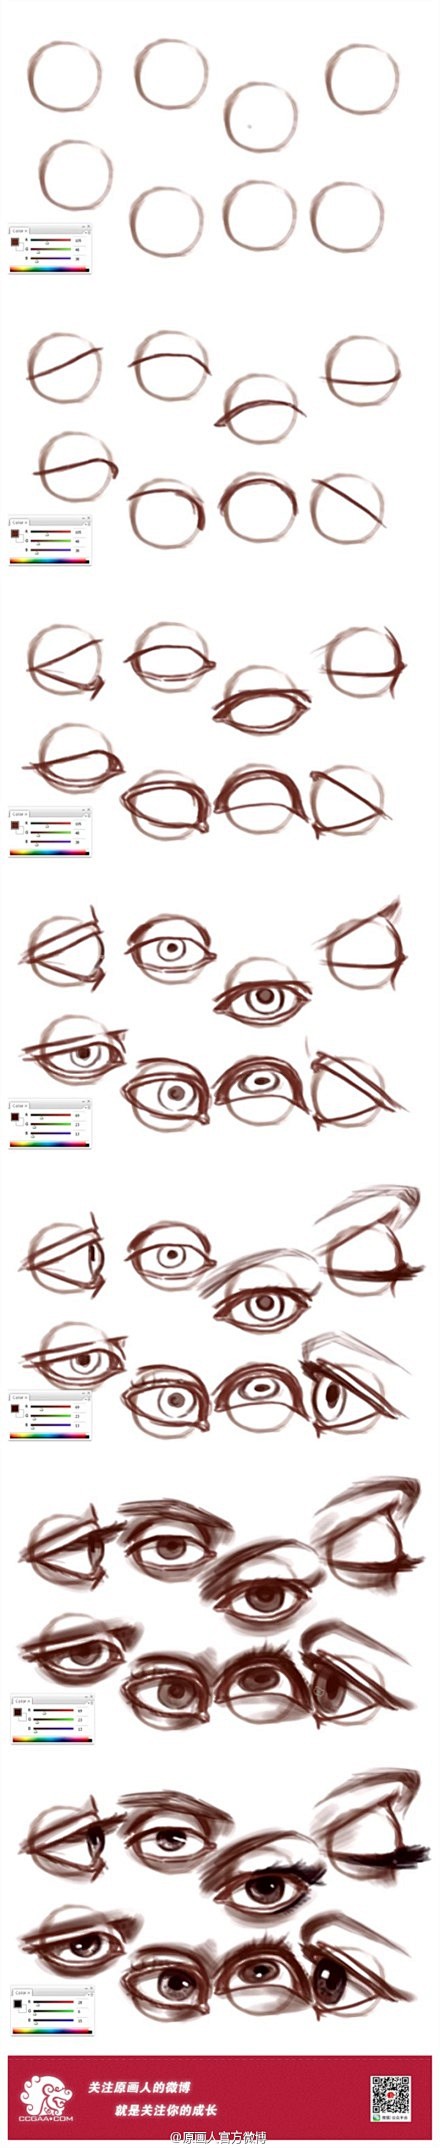 关于眼睛绘制的教程视频：|How to ...